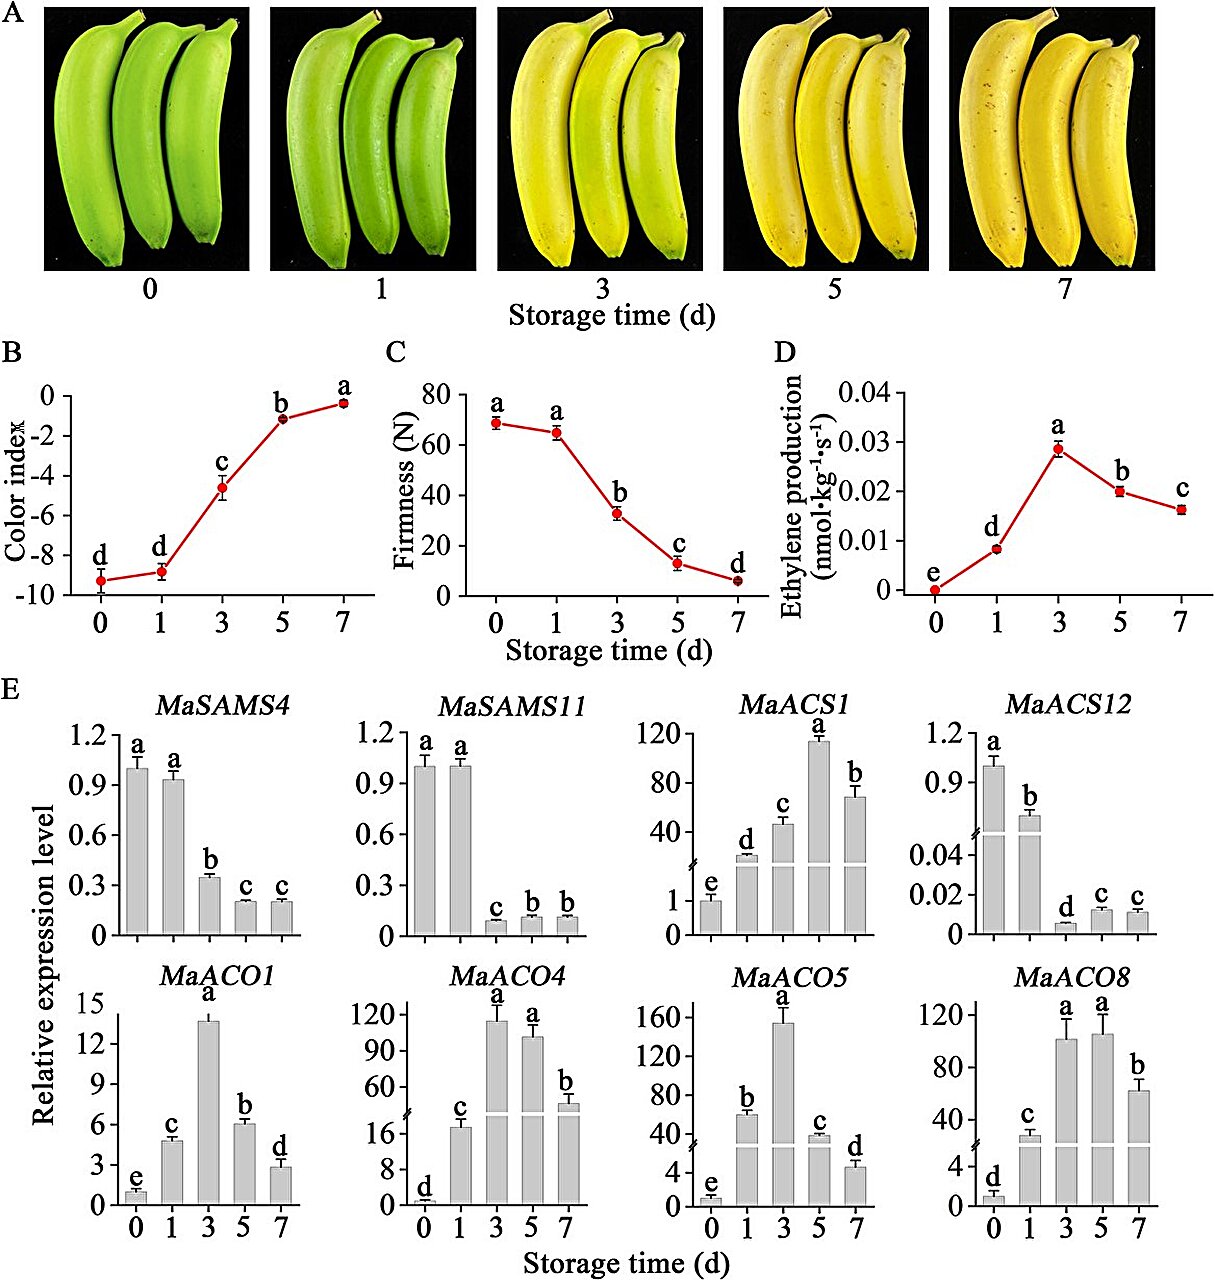 Percer le mystère de la biosynthèse de l'éthylène dans les bananes en cours de maturation